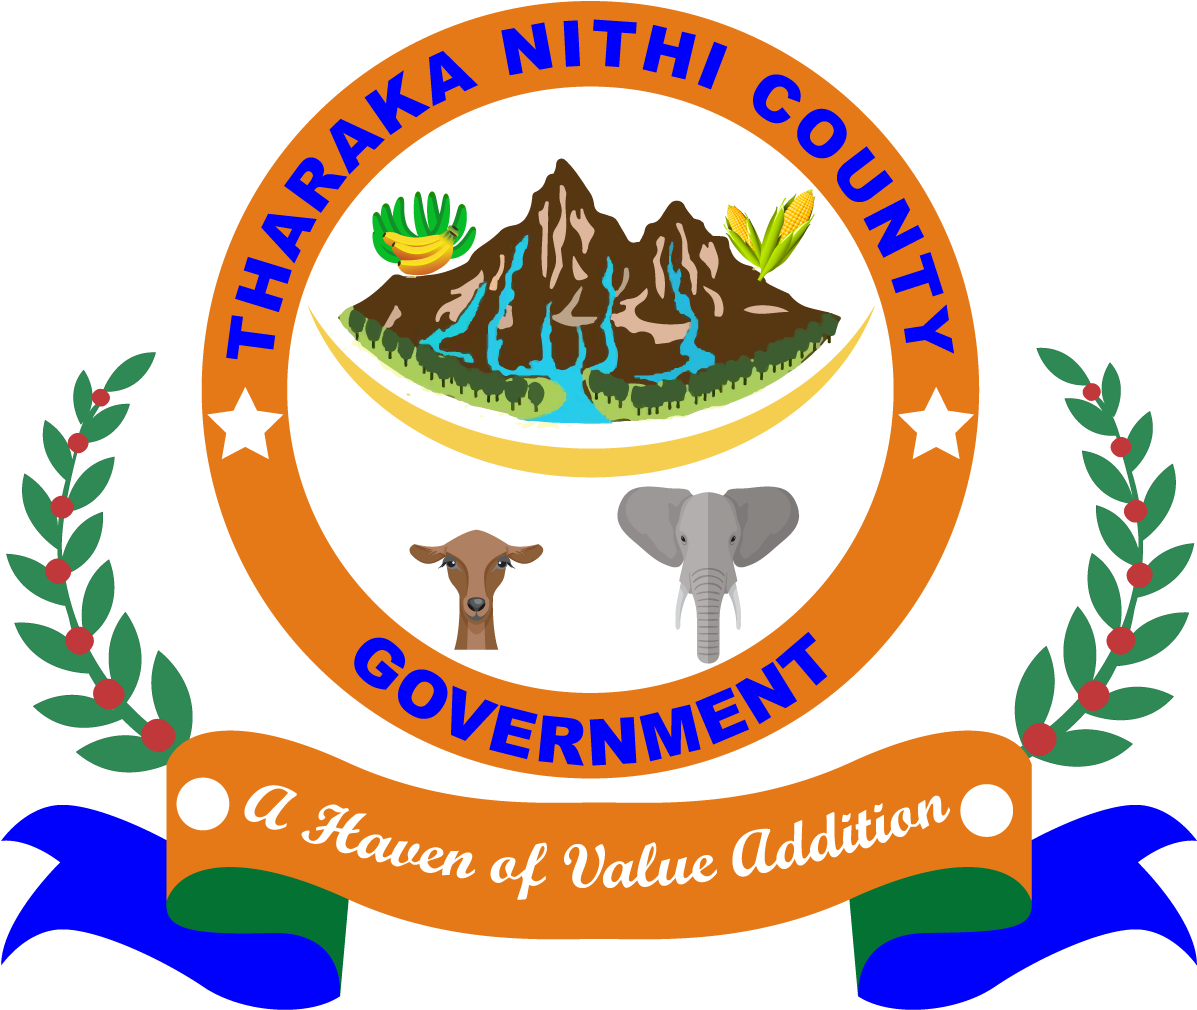 Identity Tharaka Nithi County Emblem - Tharaka Nithi County Government (1280x1280)